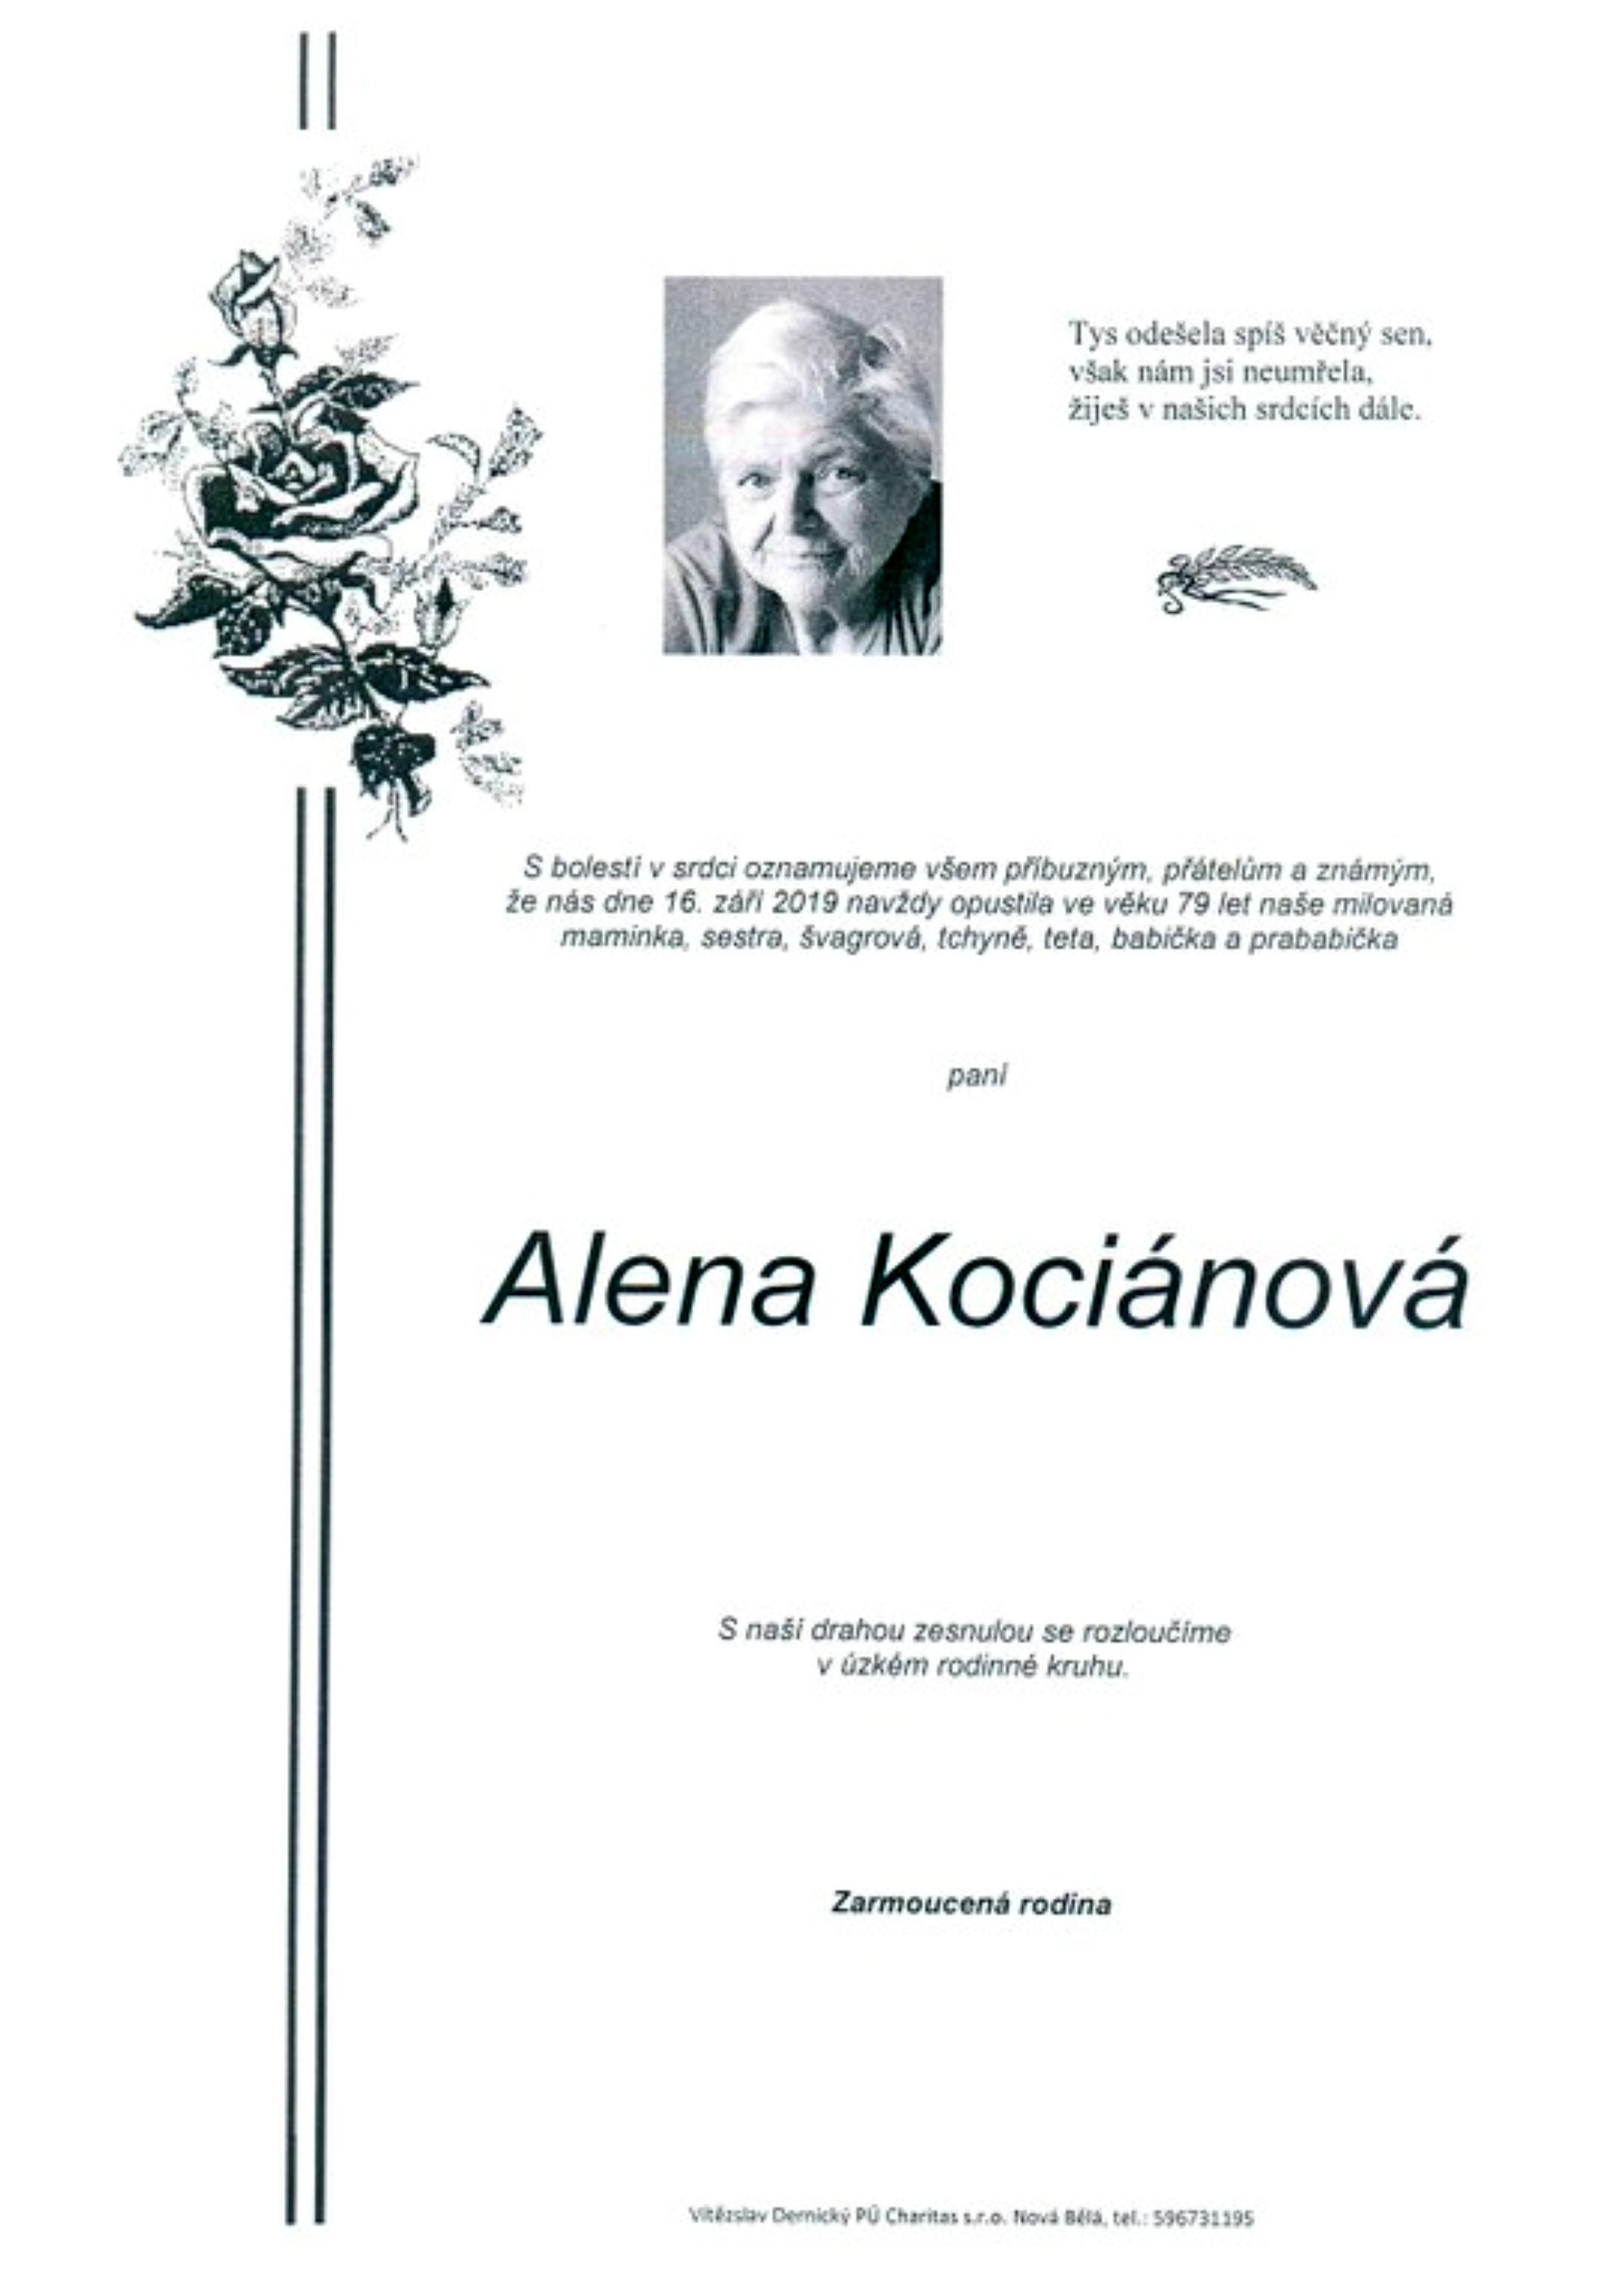 Alena Kociánová